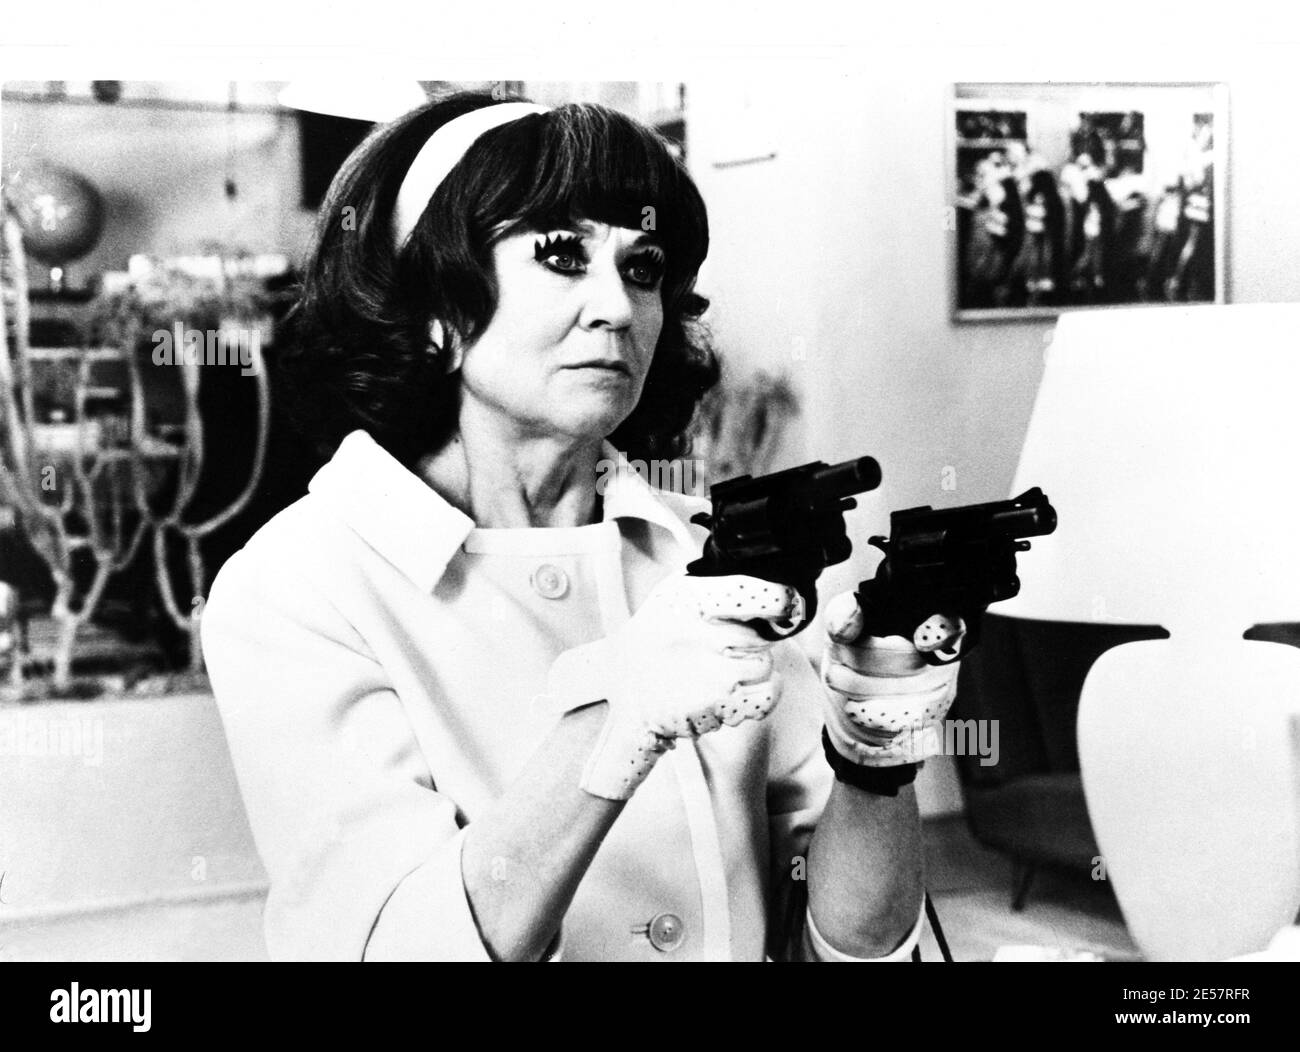 1988 , SPAGNA : l'attrice cinematografica spagnola JULIETA SERRANO (nata il 21 gennaio 1933 Barcellona , Spagna ) a MUJERES al BORDE DE un ATAQUE DE NERVIOS ( Donne sull'orlo d'una crisi di nervi - Donne sulla vierge di un nervous breakdown ) Di PEDRO ALMODOVAR - FILM - CINEMA - pistola - pistola - revolver - revolver - pistola - pistole - guanti - guanto - guanto - guanto --- Archivio GBB Foto Stock